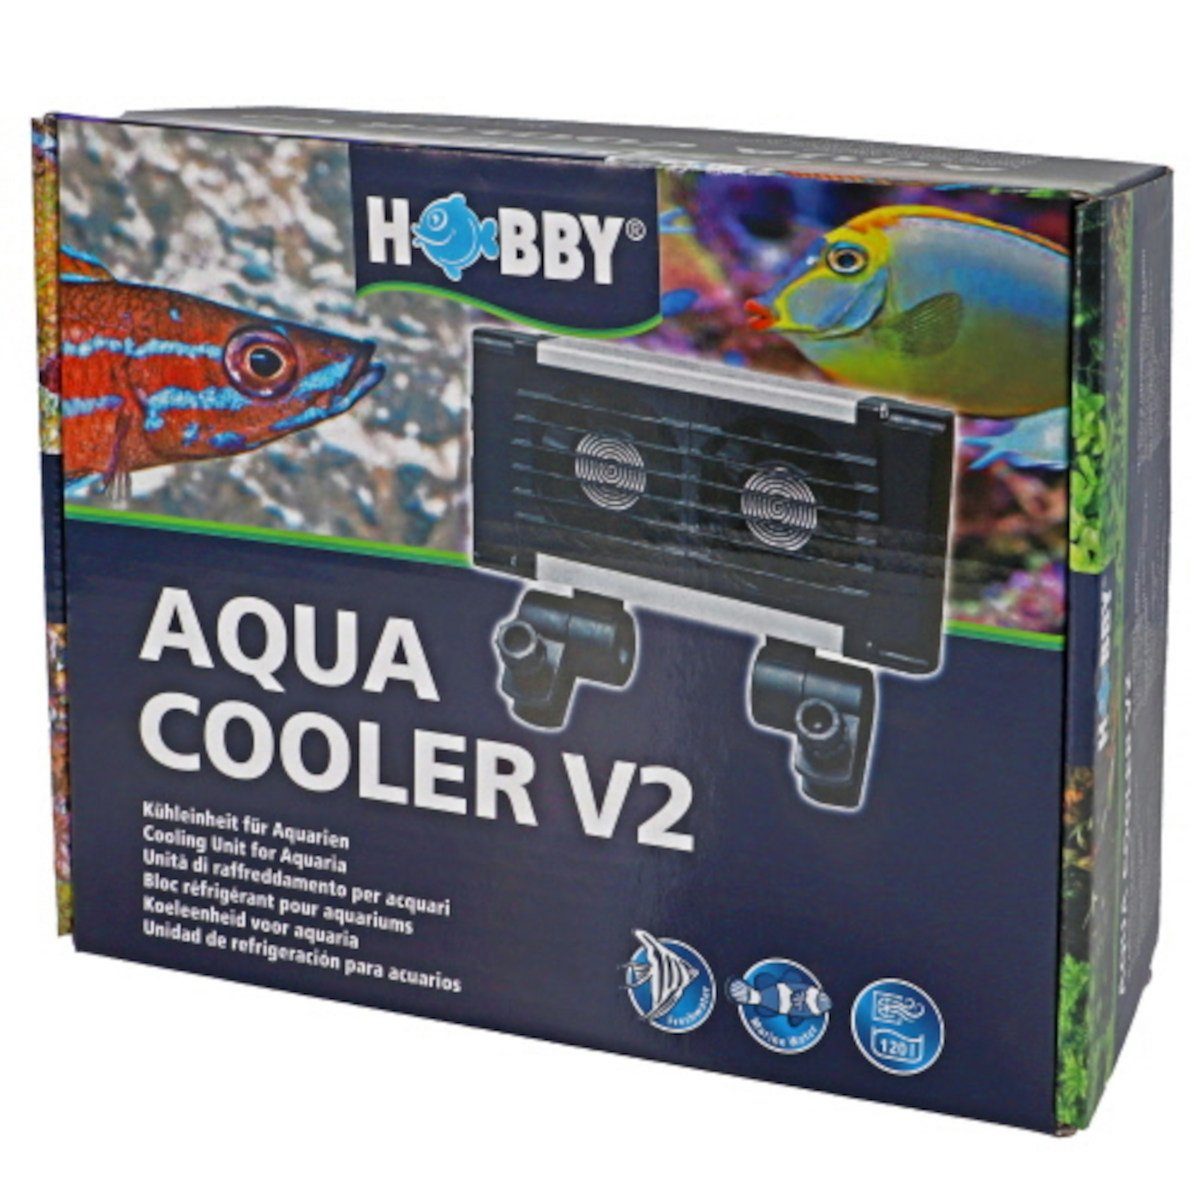 HOBBY Regelheizer Aqua Cooler V2 - Kühleinheit für Aquarien bis 120 L